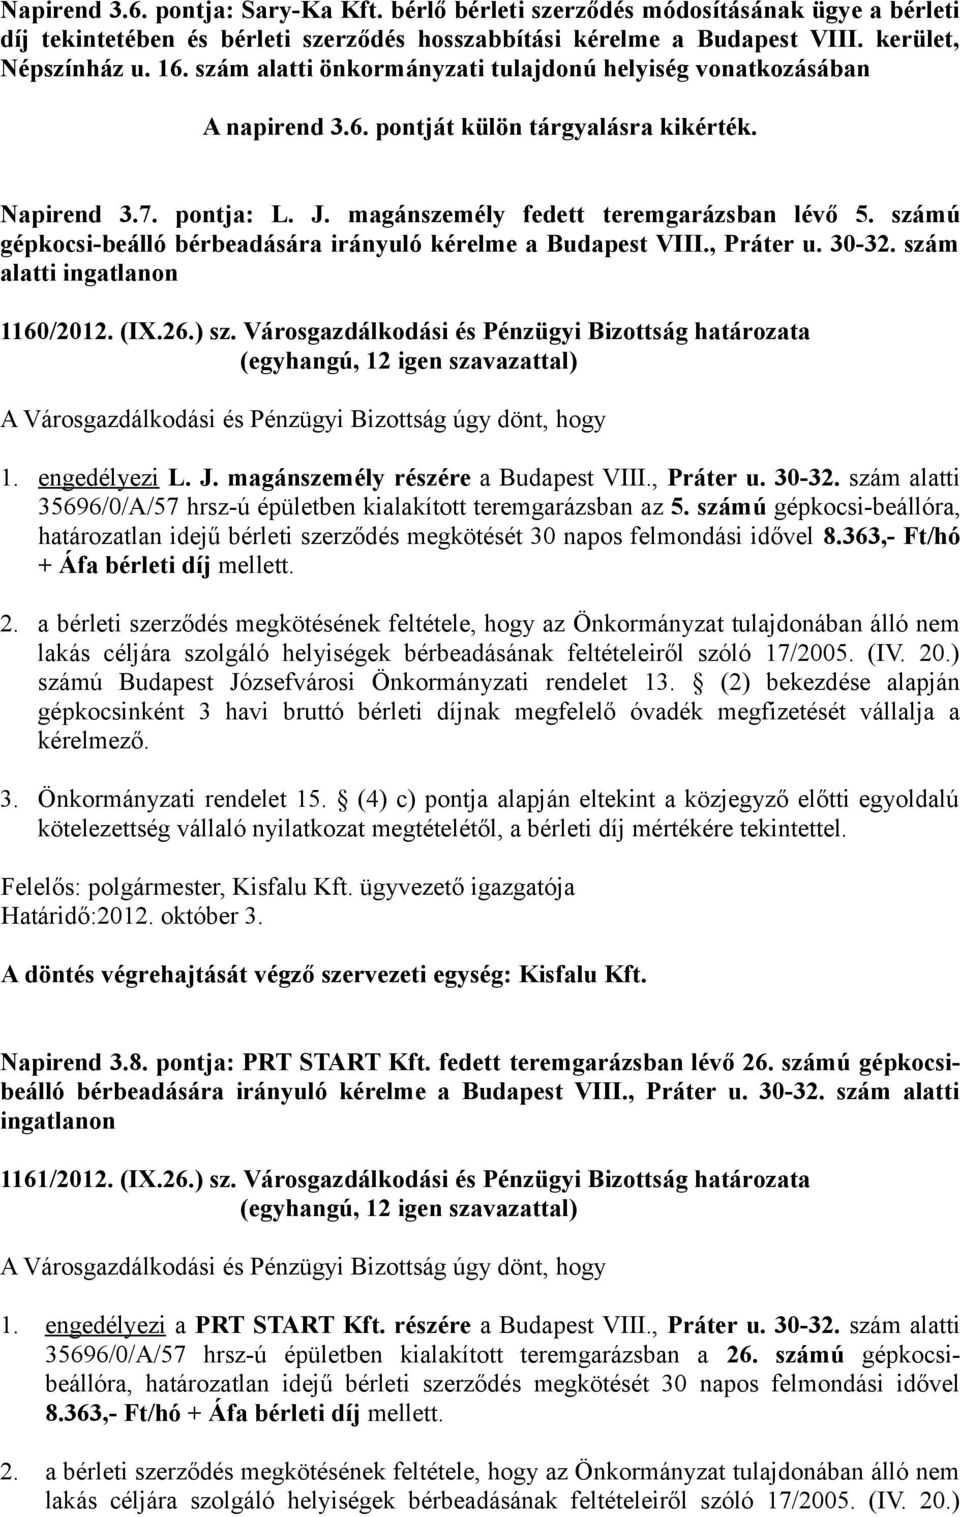 számú gépkocsi-beálló bérbeadására irányuló kérelme a Budapest VIII., Práter u. 30-32. szám alatti ingatlanon 1160/2012. (IX.26.) sz.